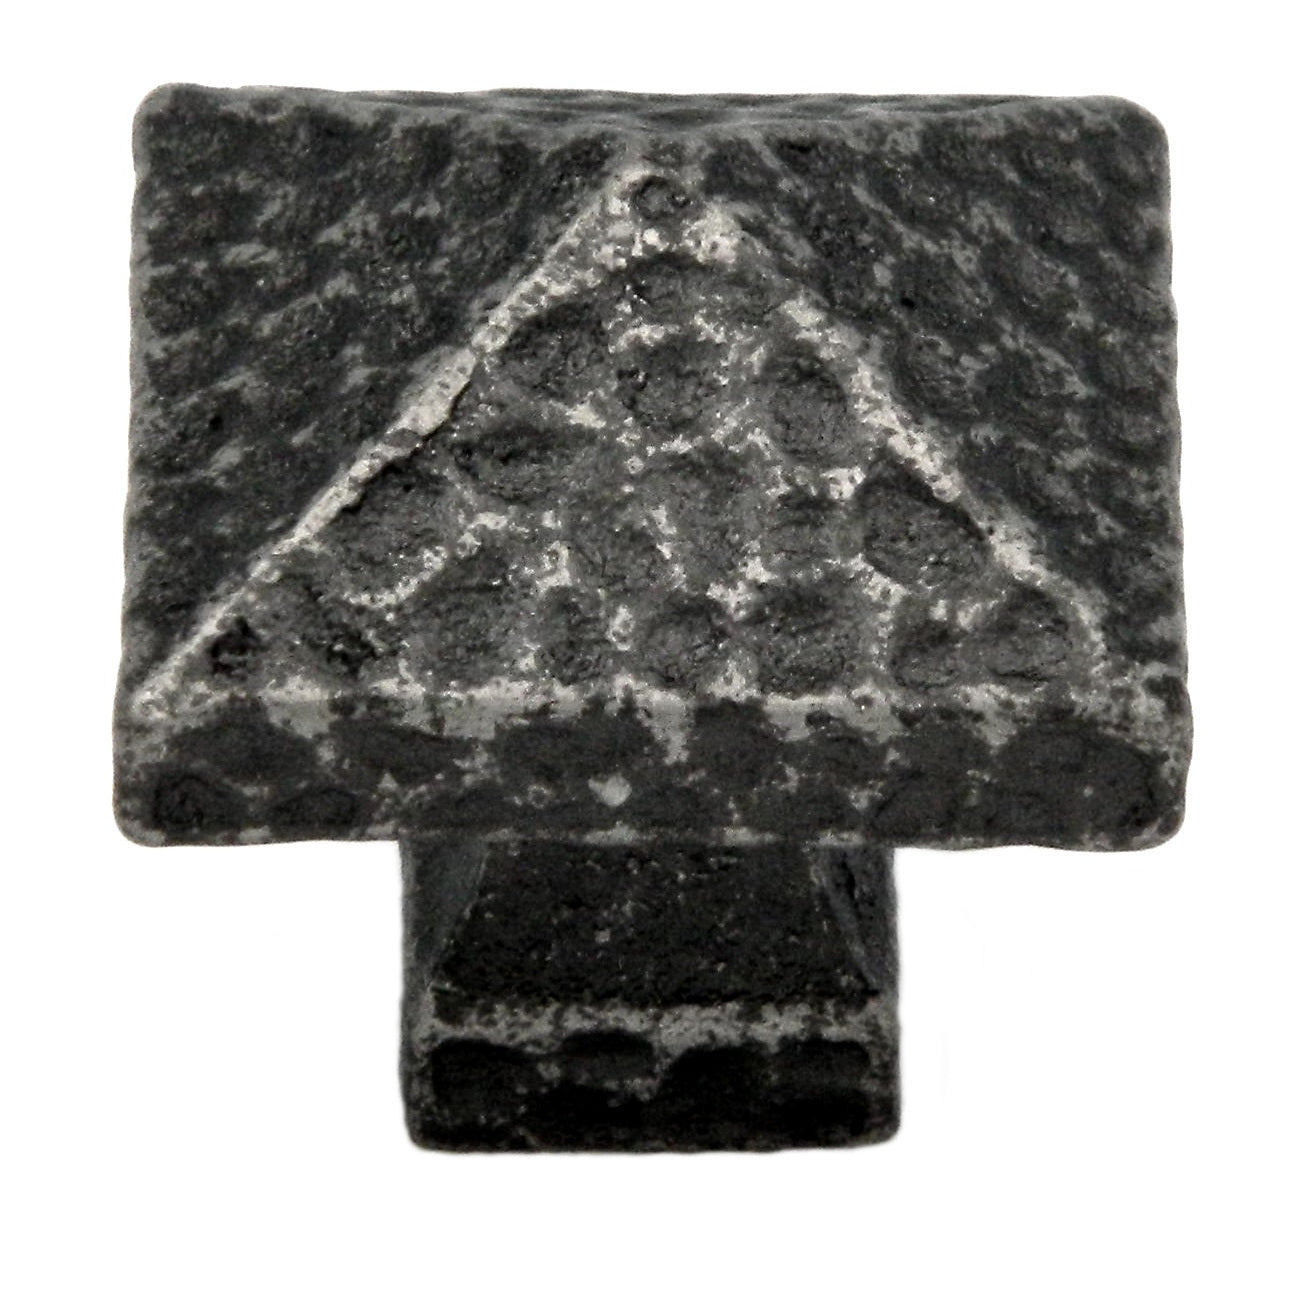 Paquete de 20 perillas de gabinete de latón macizo con forma de pirámide martillada cuadrada de peltre inglés antiguo Belwith Keeler Kingston de 1 1/4" M682